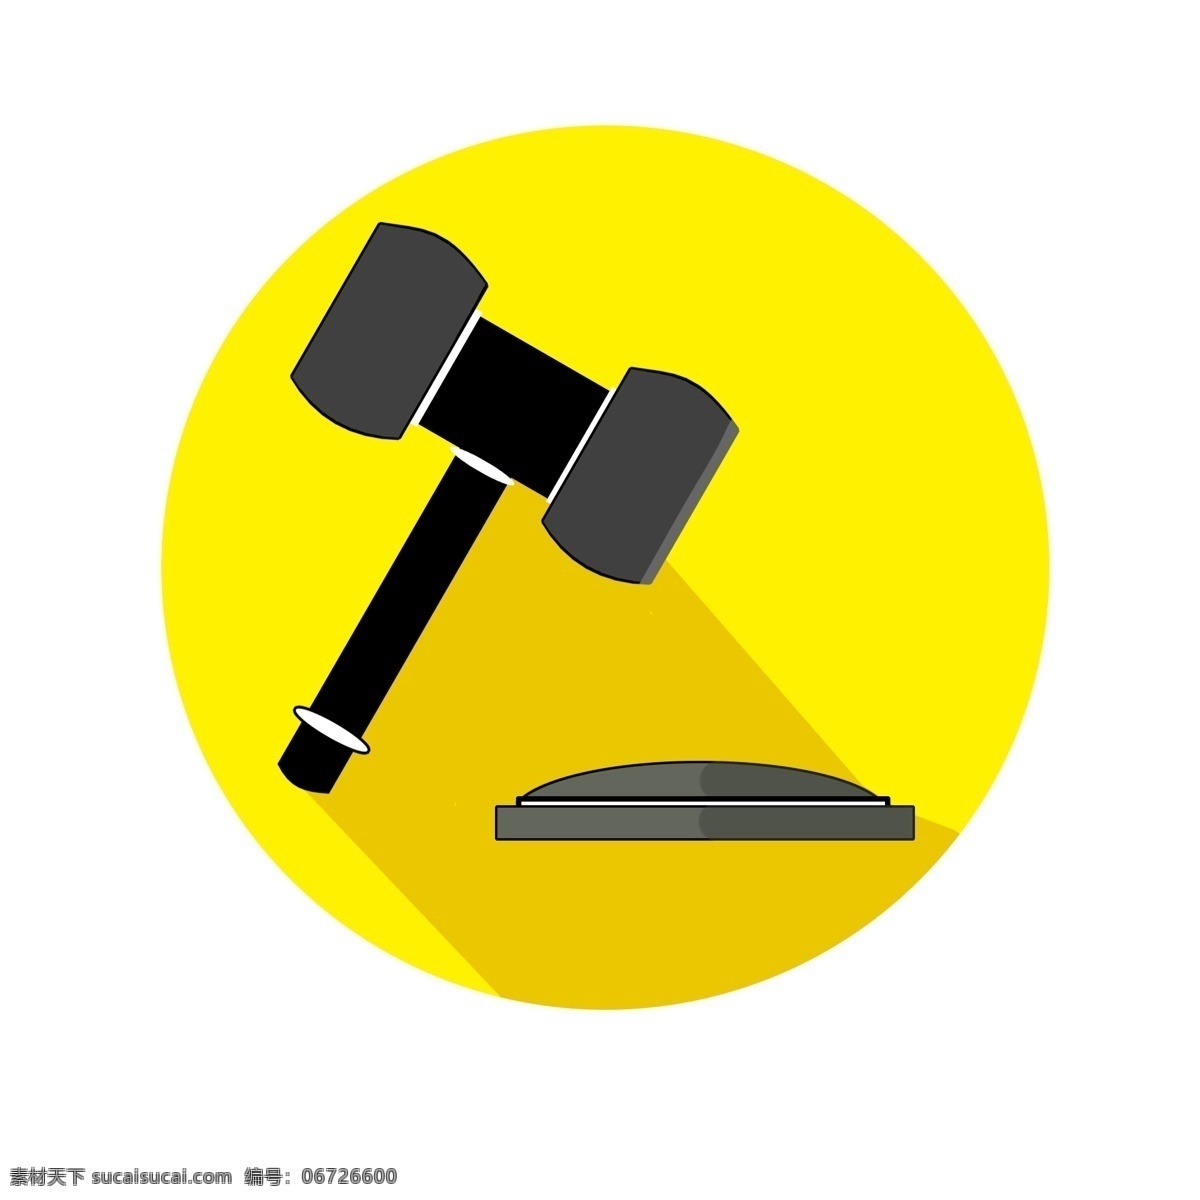 法官 锤子 创意设计 创意 黄色 司法 法律 诉讼 法律体系 拍卖 法槌 手绘锤子 矢量法槌